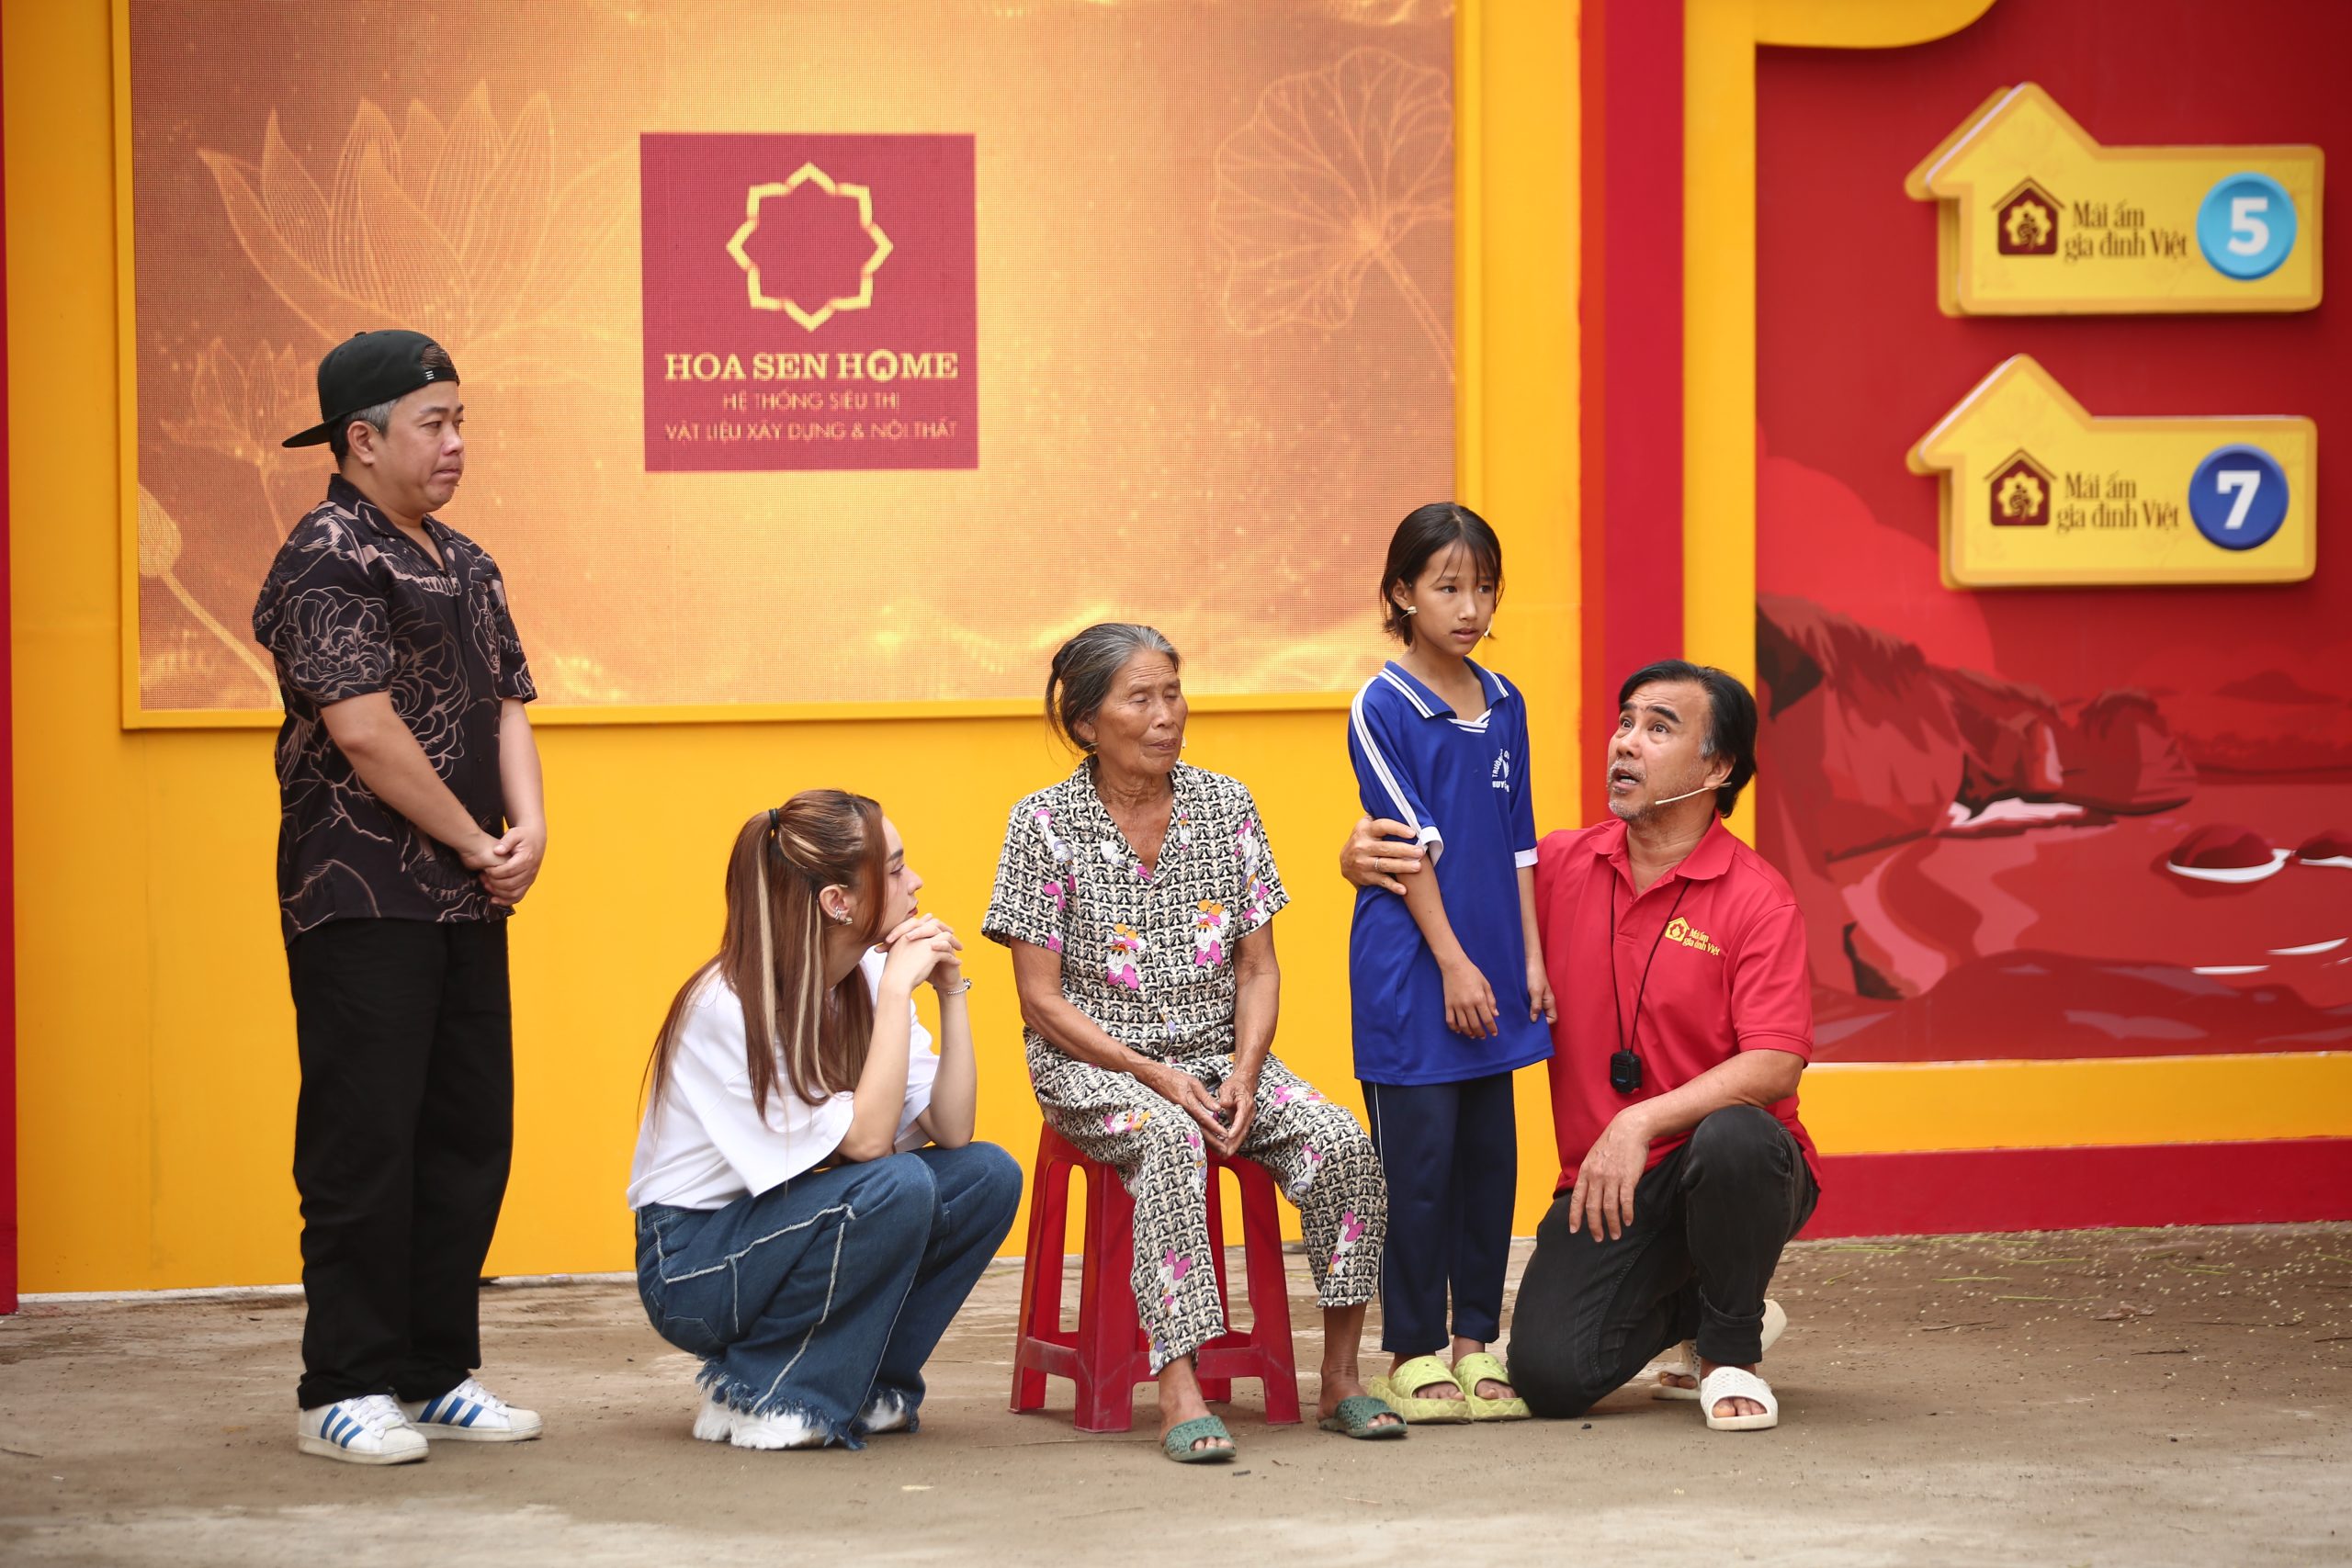 Em Đặng Thị Hồng Hoa và bà ngoại xúc động khi nhận được món quà giá trị, ý nghĩa đến từ chương trình “Mái ấm gia đình Việt”.